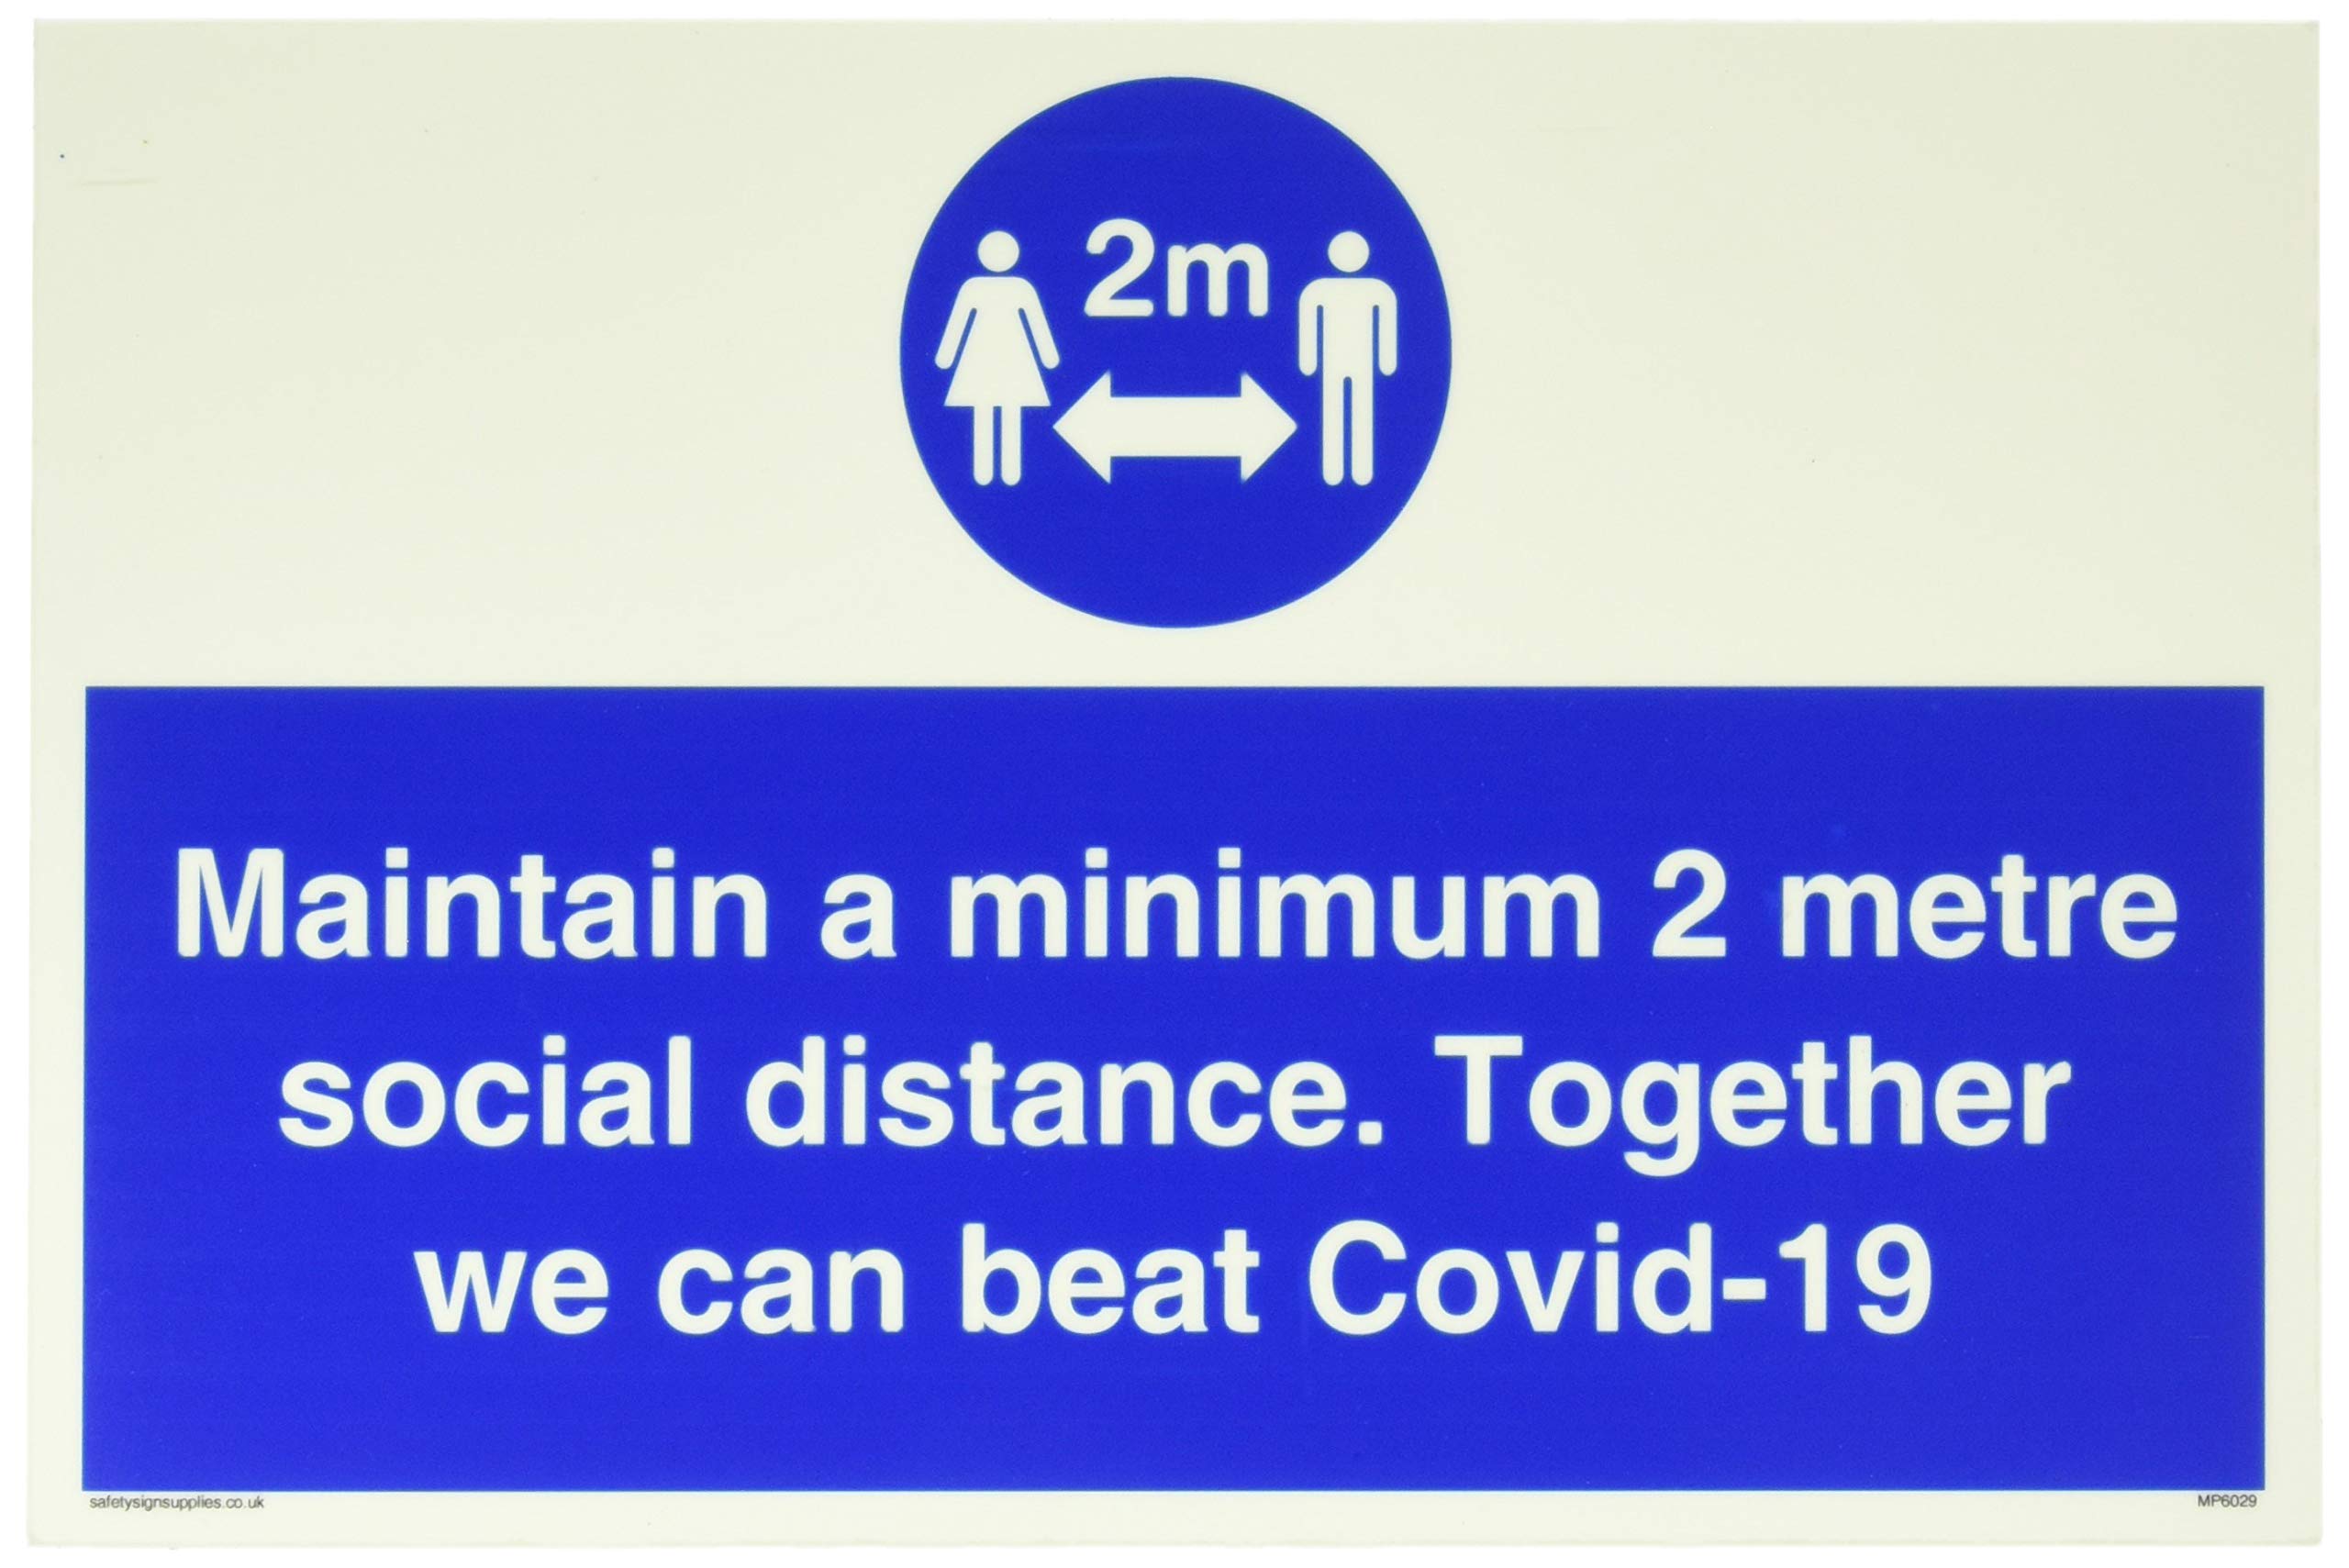 Halten Sie mindestens 2 Meter soziale Distanz. Together we can beat Covid-19